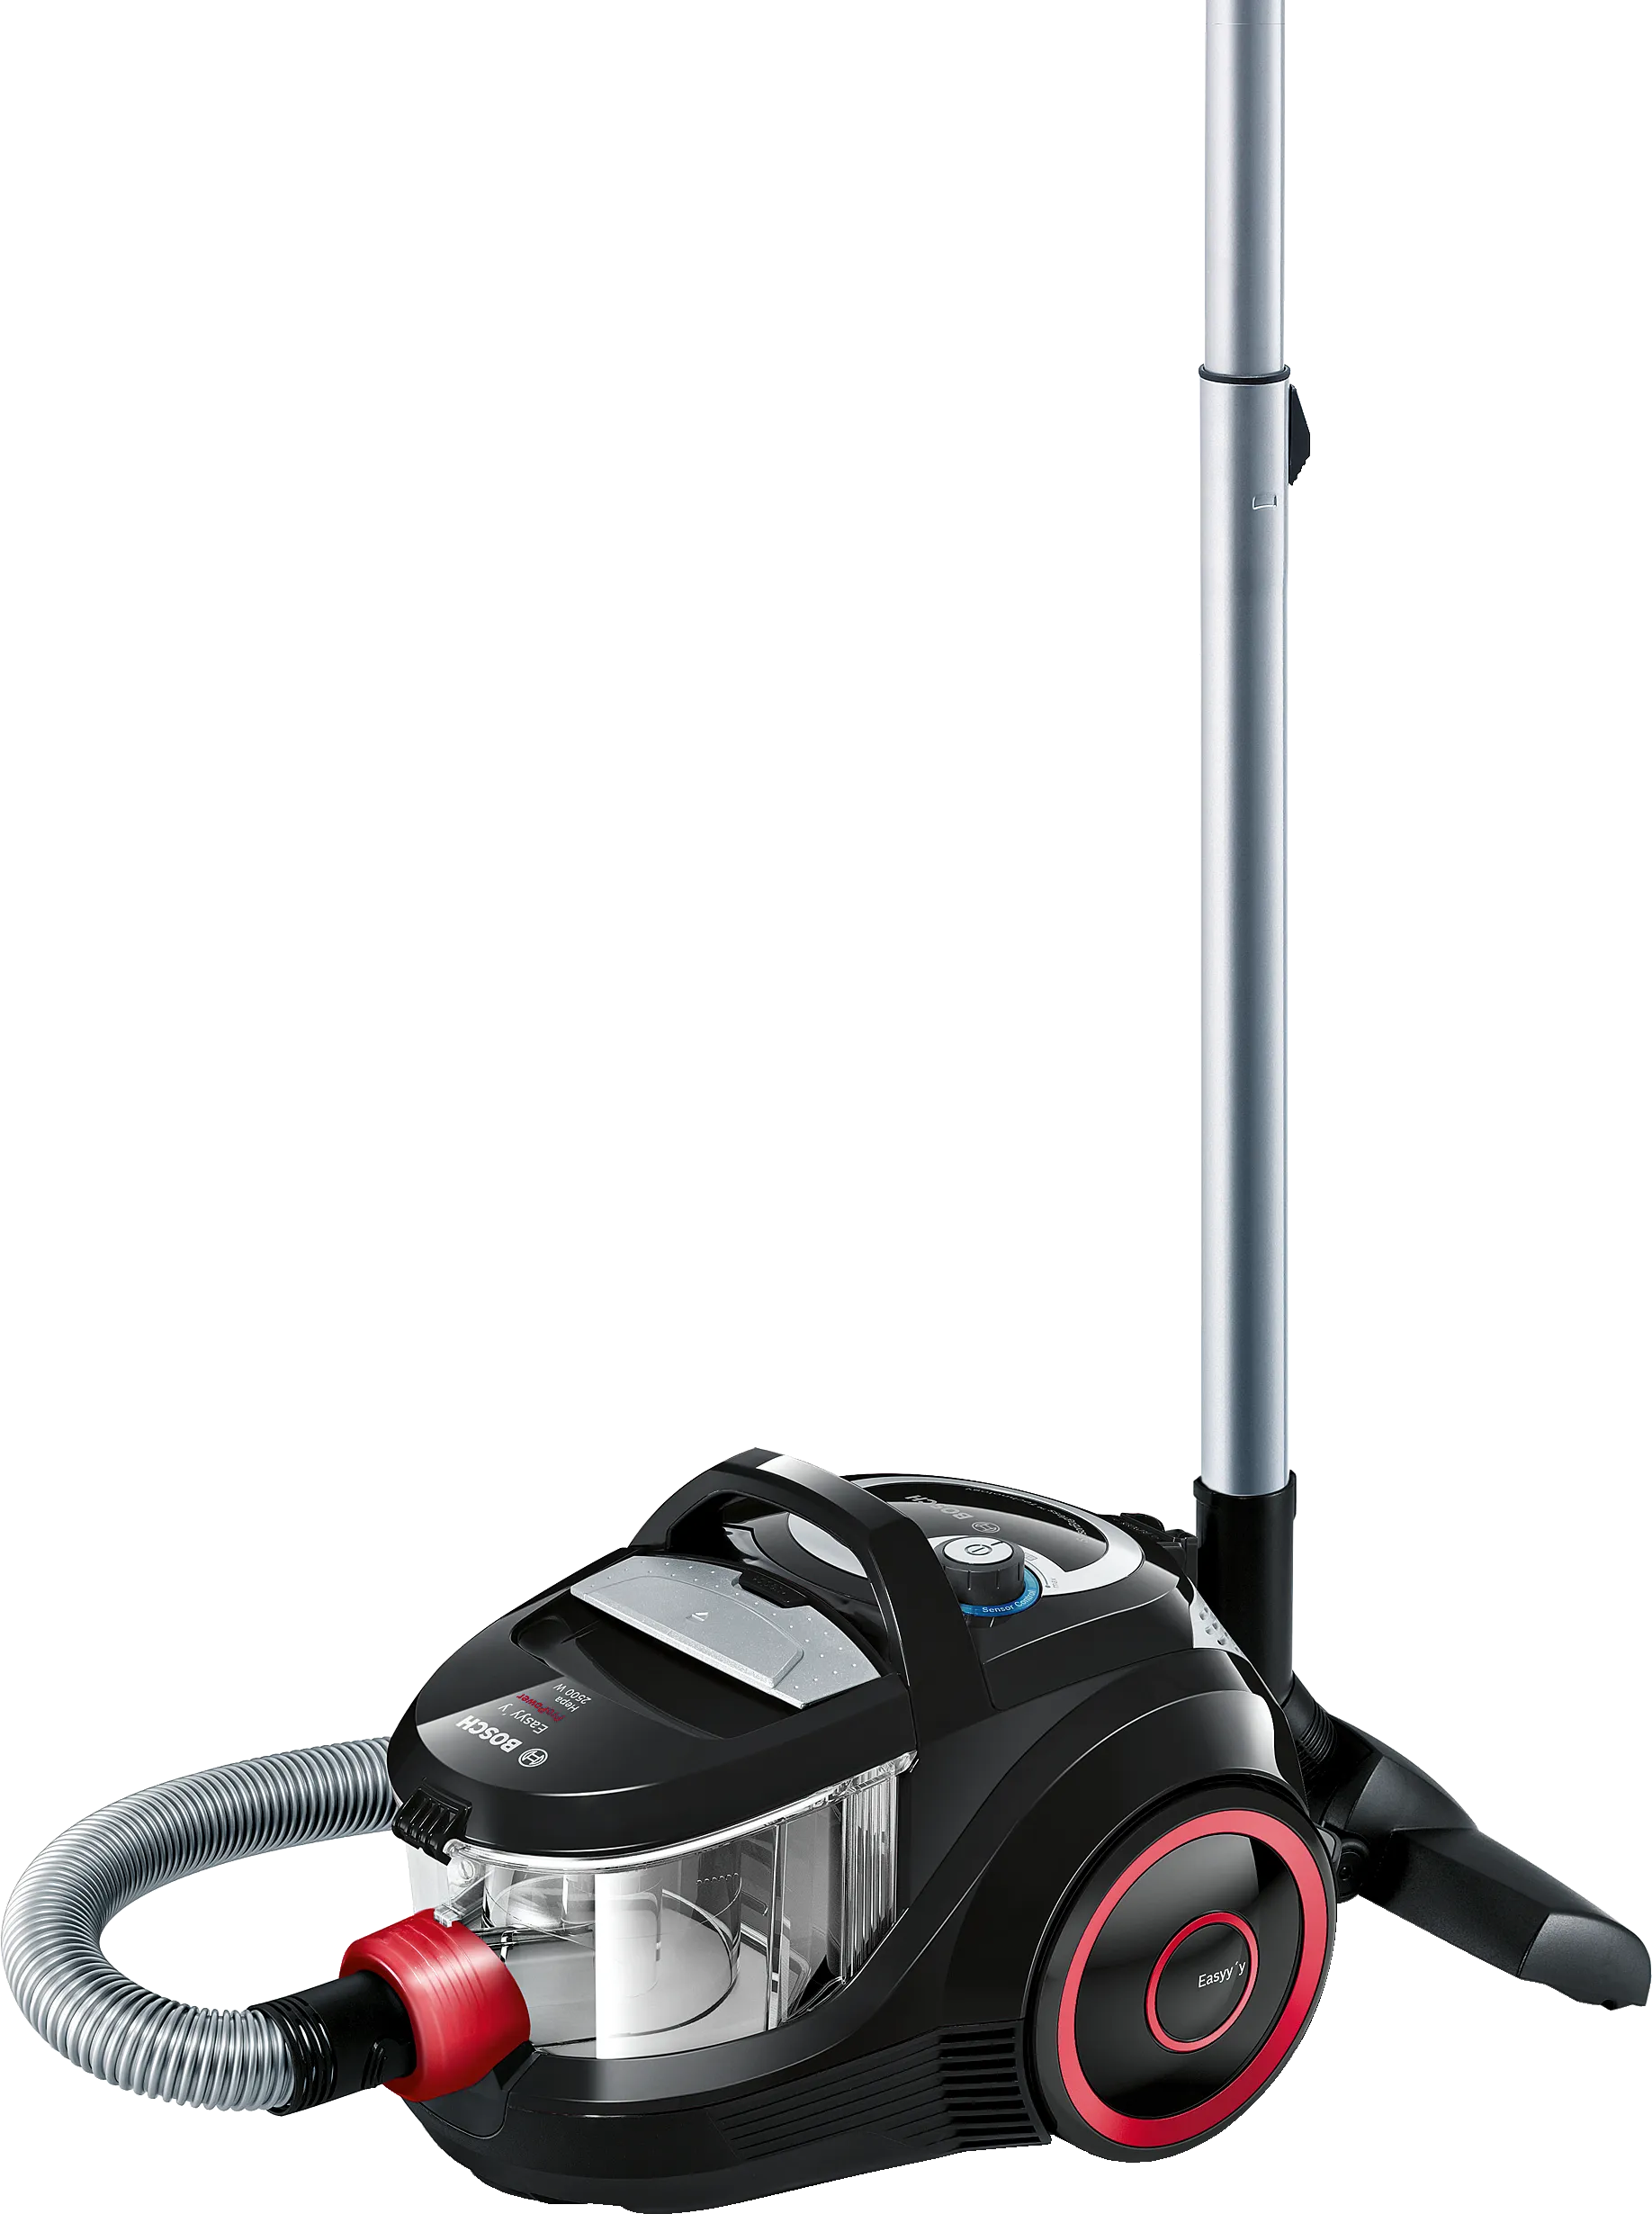 Series 4 Bagless vacuum cleaner ProPower Black 